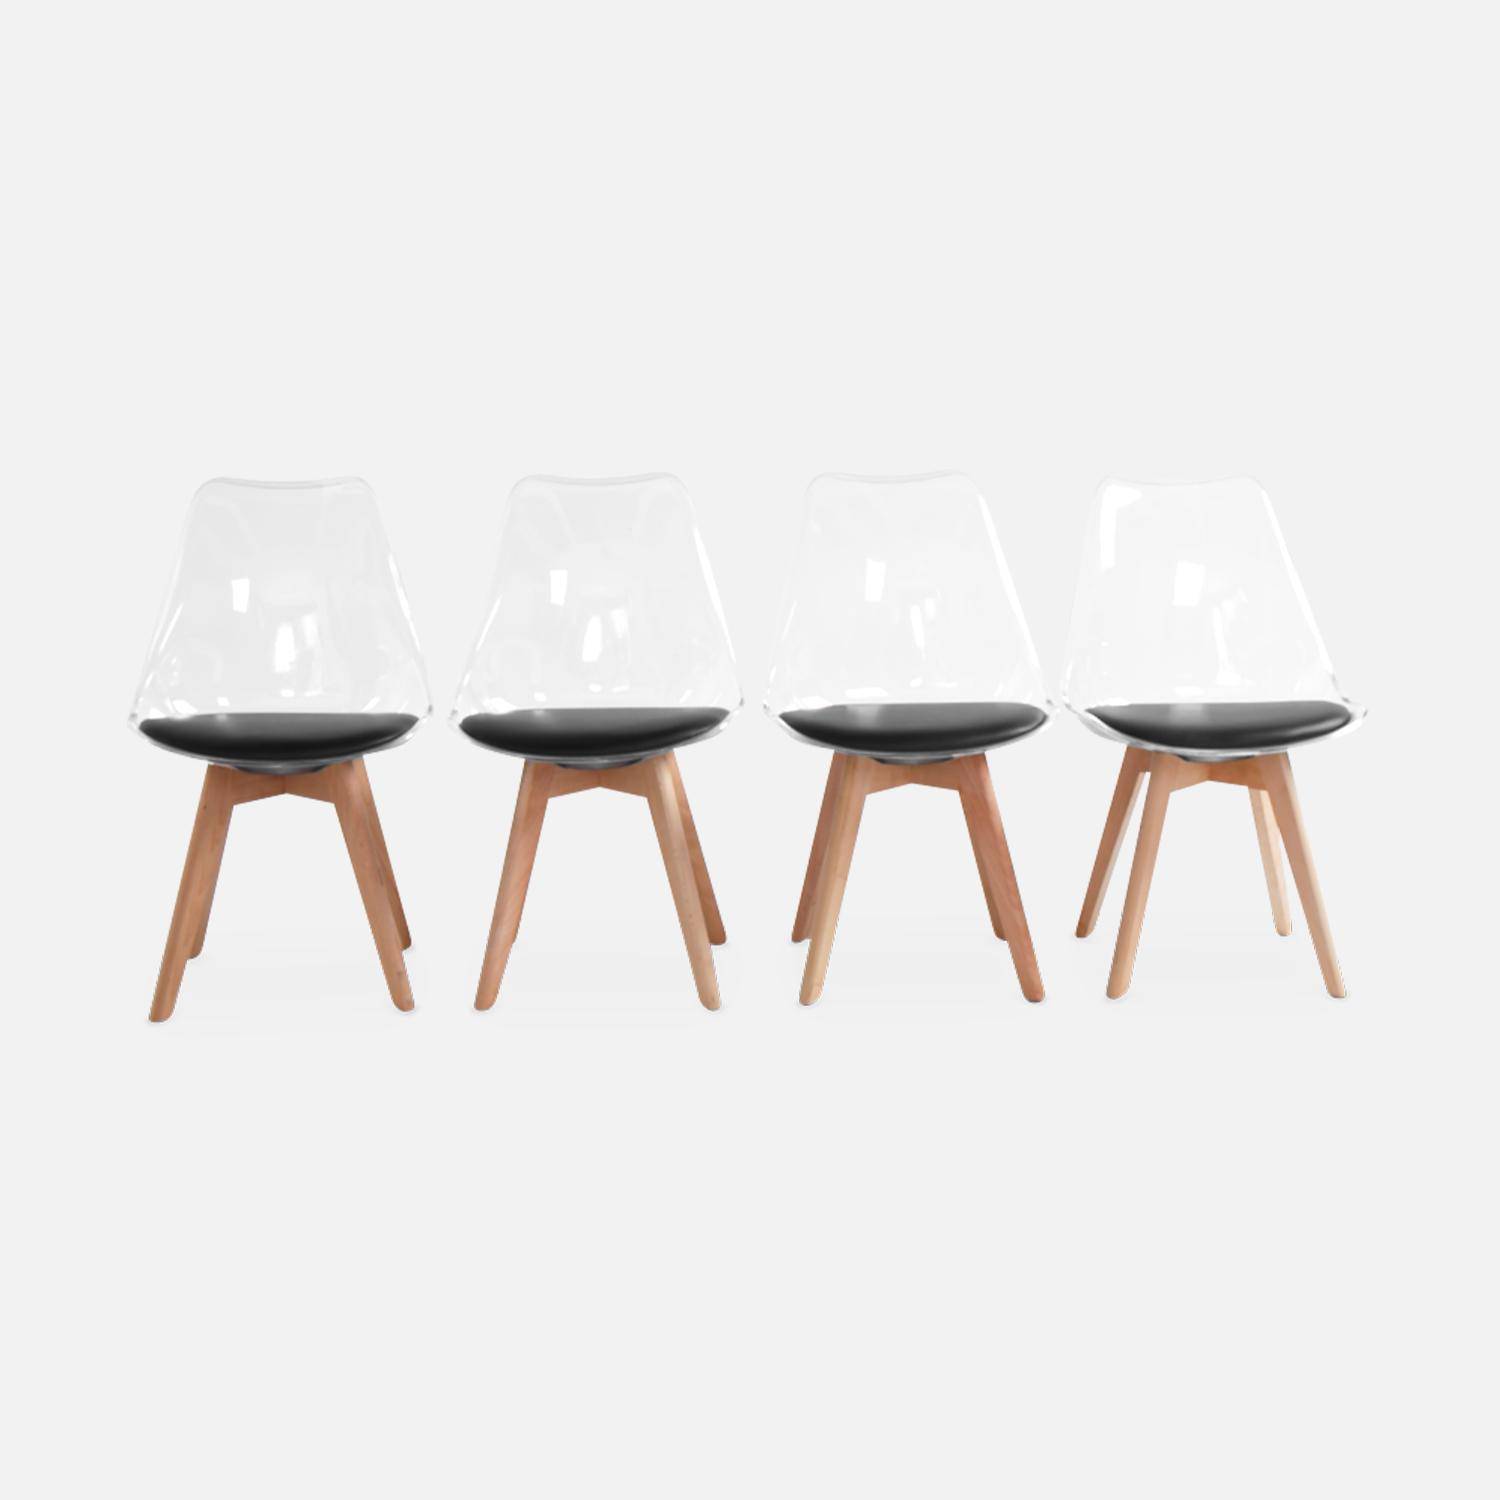 Juego de 4 sillas escandinavas - Lagertha - patas de madera, asientos individuales, cojín negro, carcasa transparente  Photo4